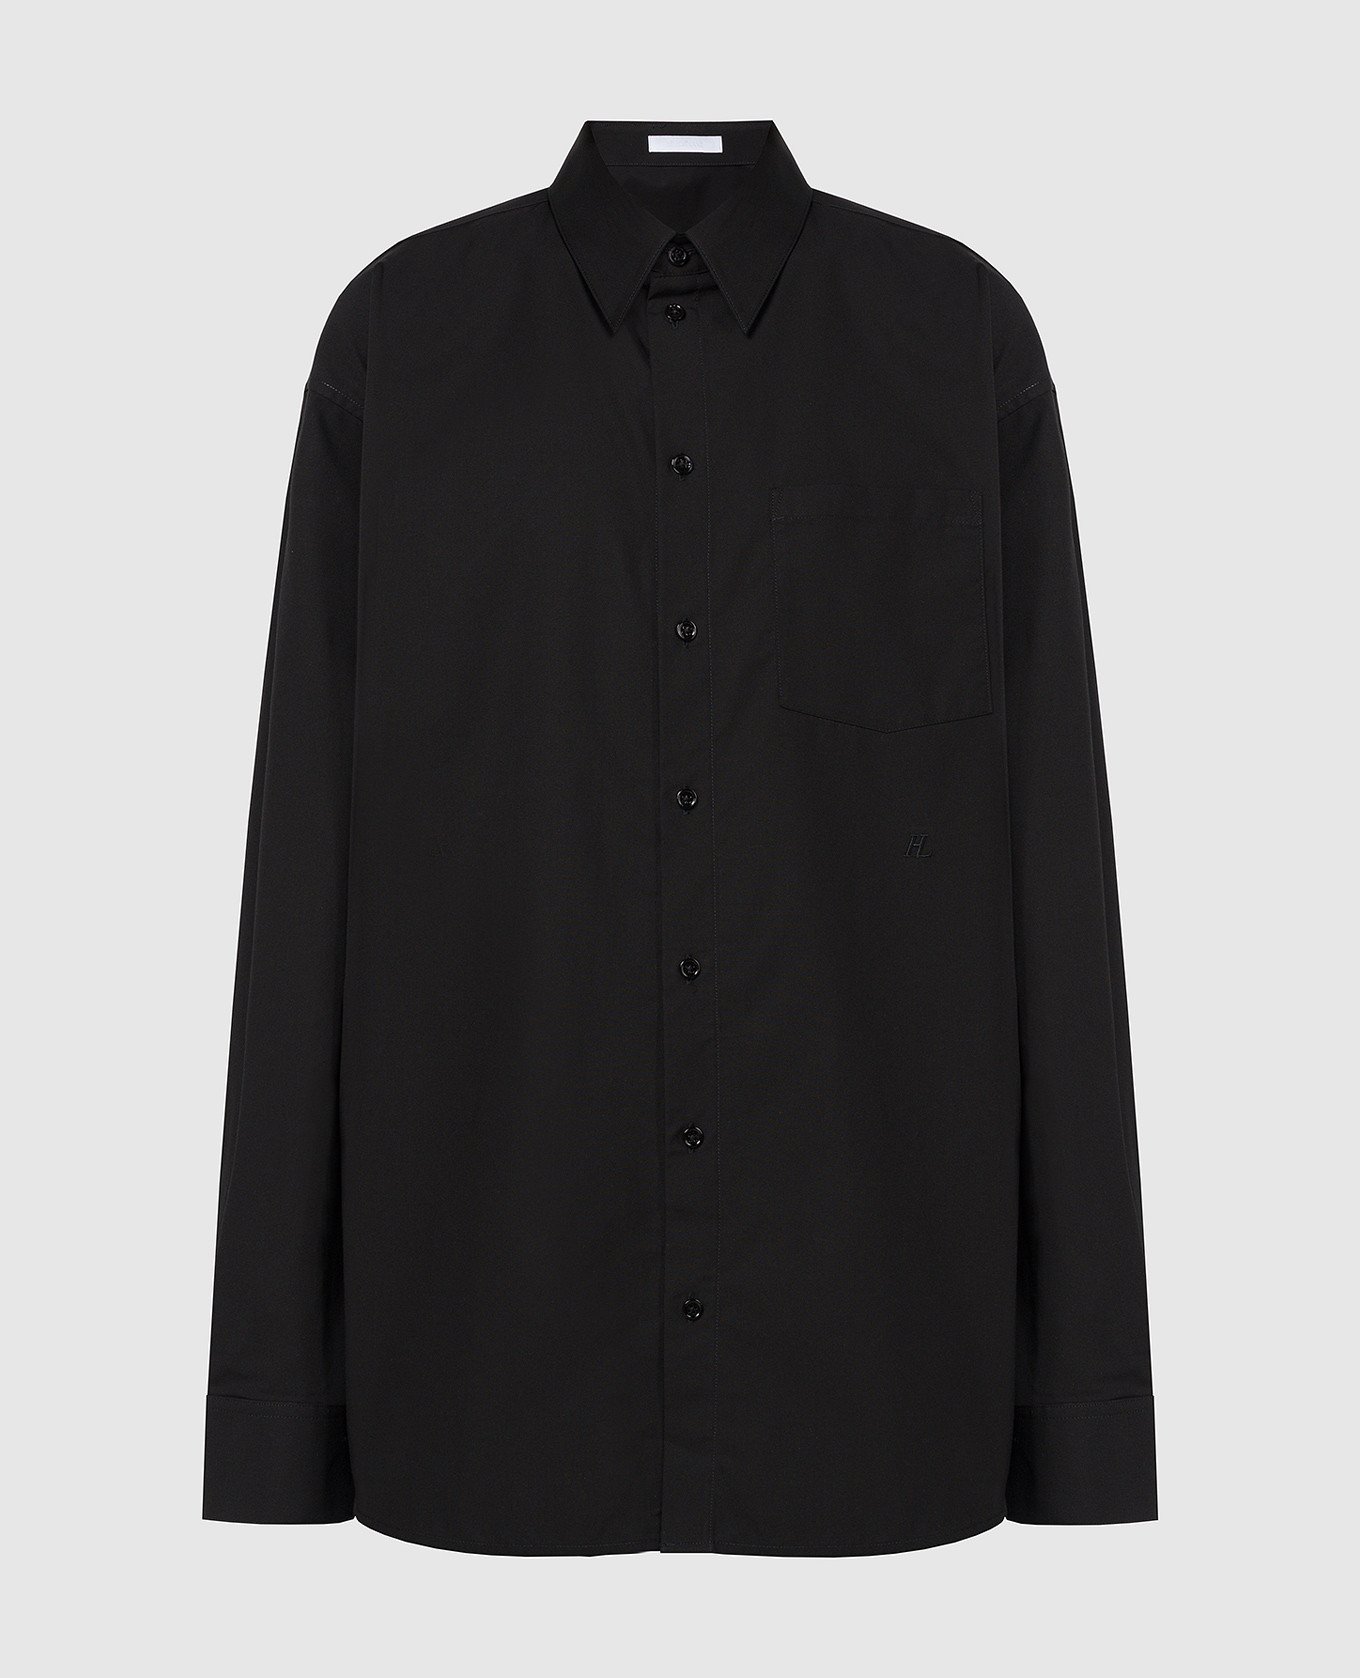 Черная рубашка с вышивкой логотипа монограммы